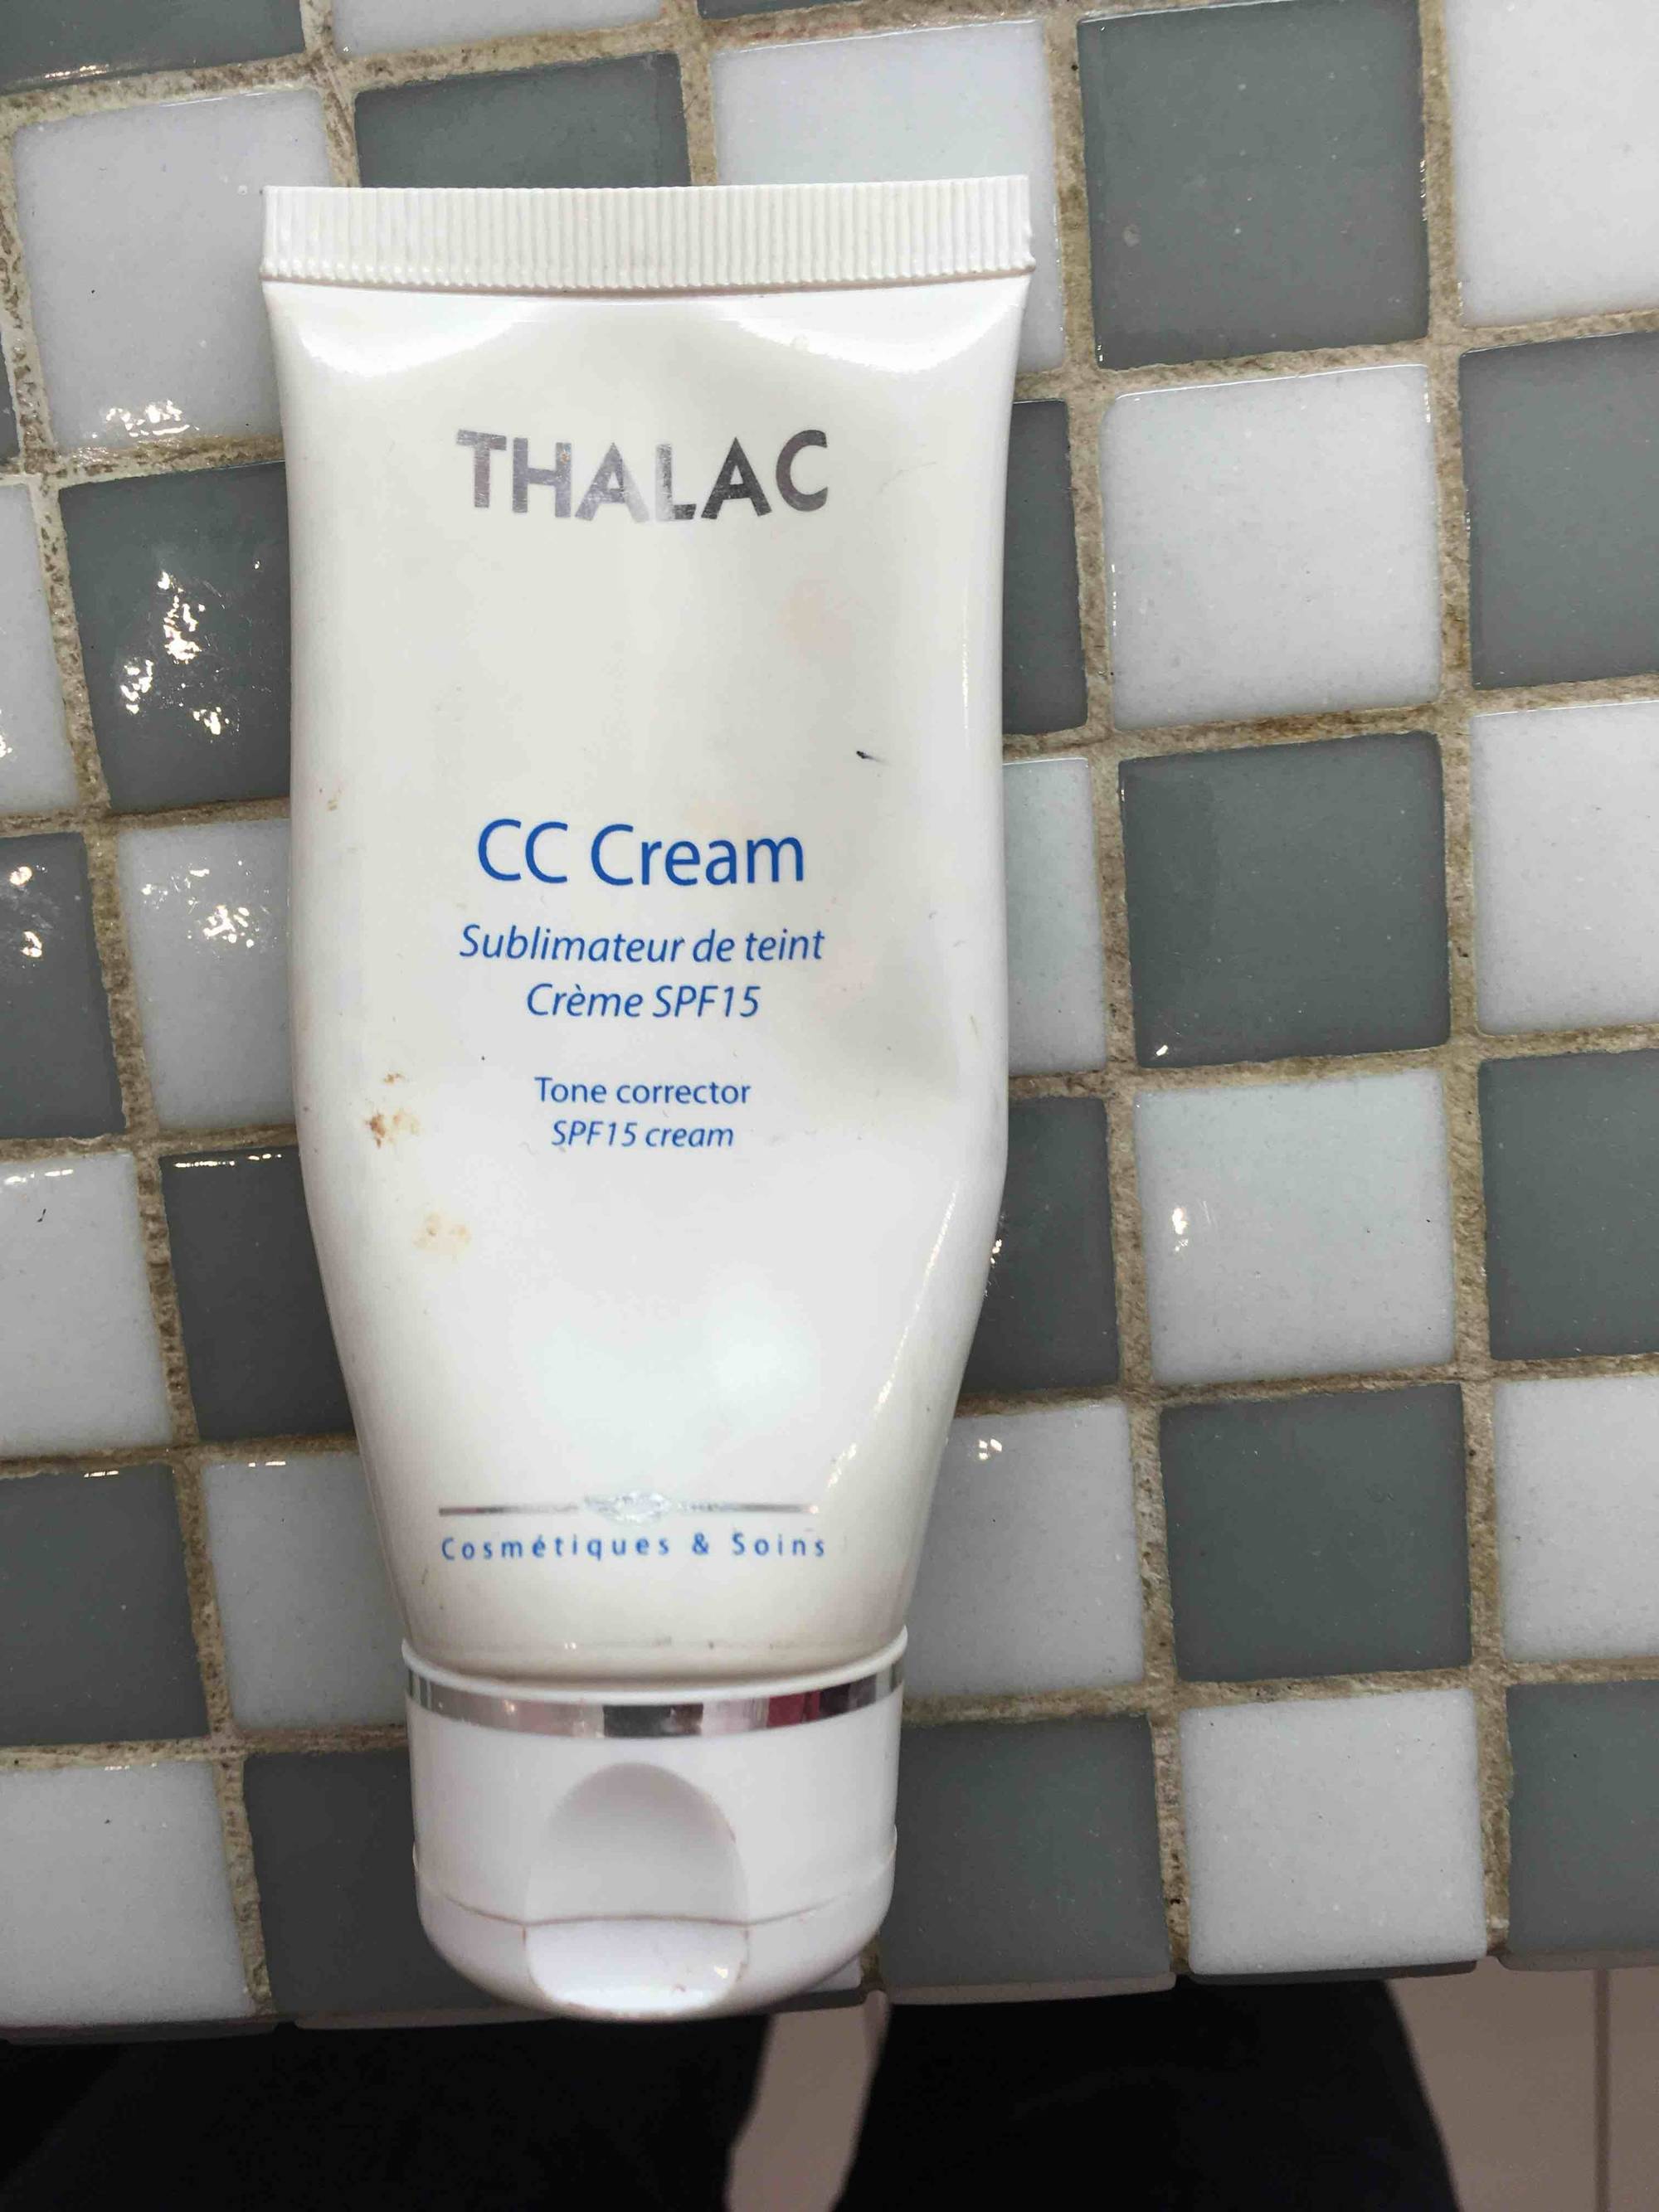 THALAC - Sublimateur de teint crème SPF15